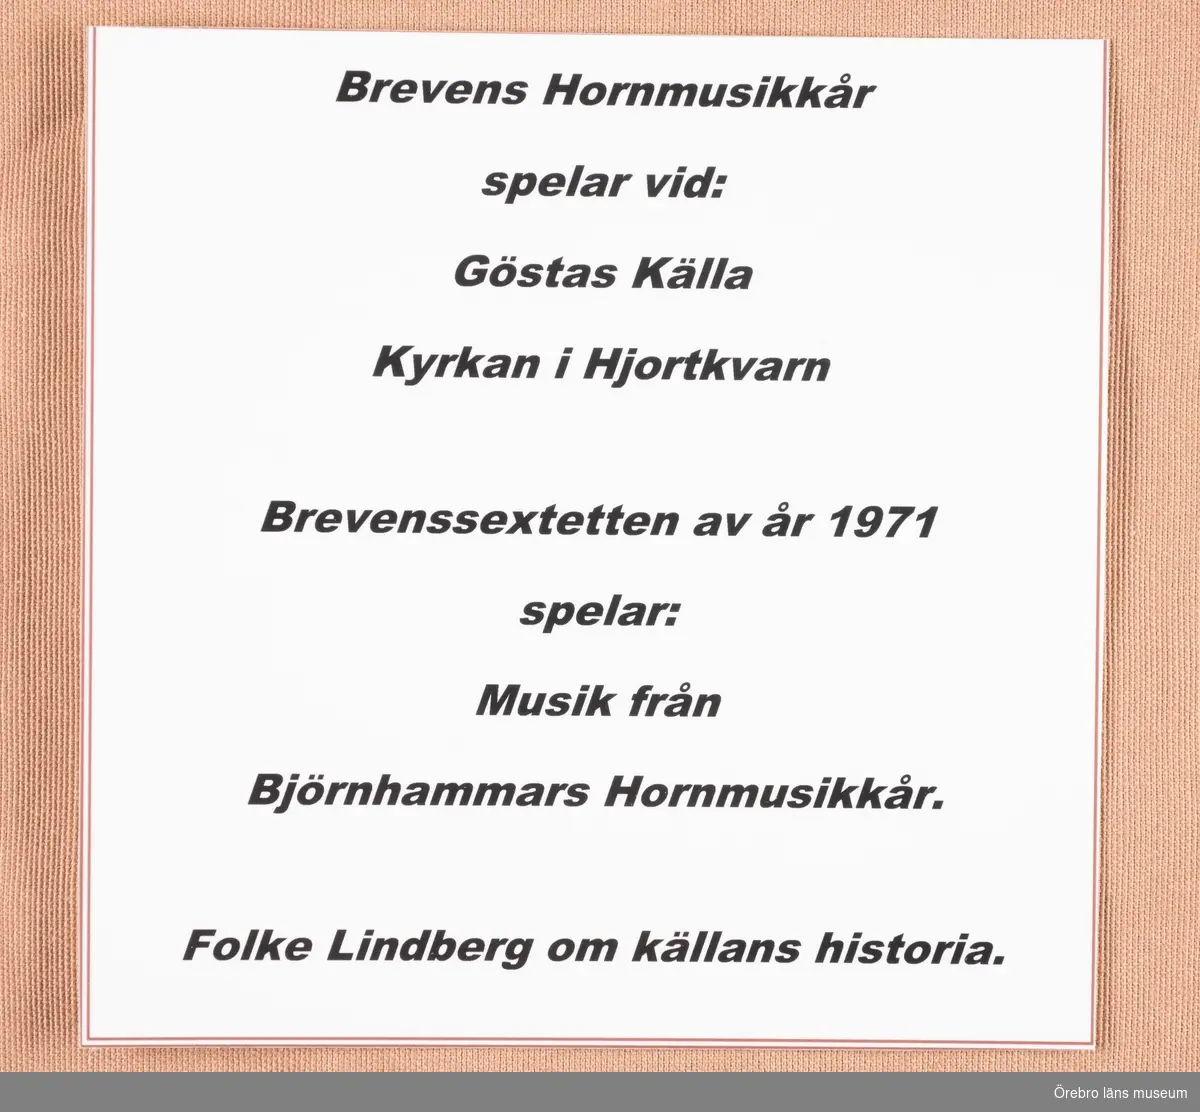 Brevens Hornmusikkår spelar vid Gösta källa kyrkan i Hjortkvarn.
Brevenssextetten av 1971 spelar musik från Björnhammars Hornmusikkår.
Folke Lindberg om källans historia.